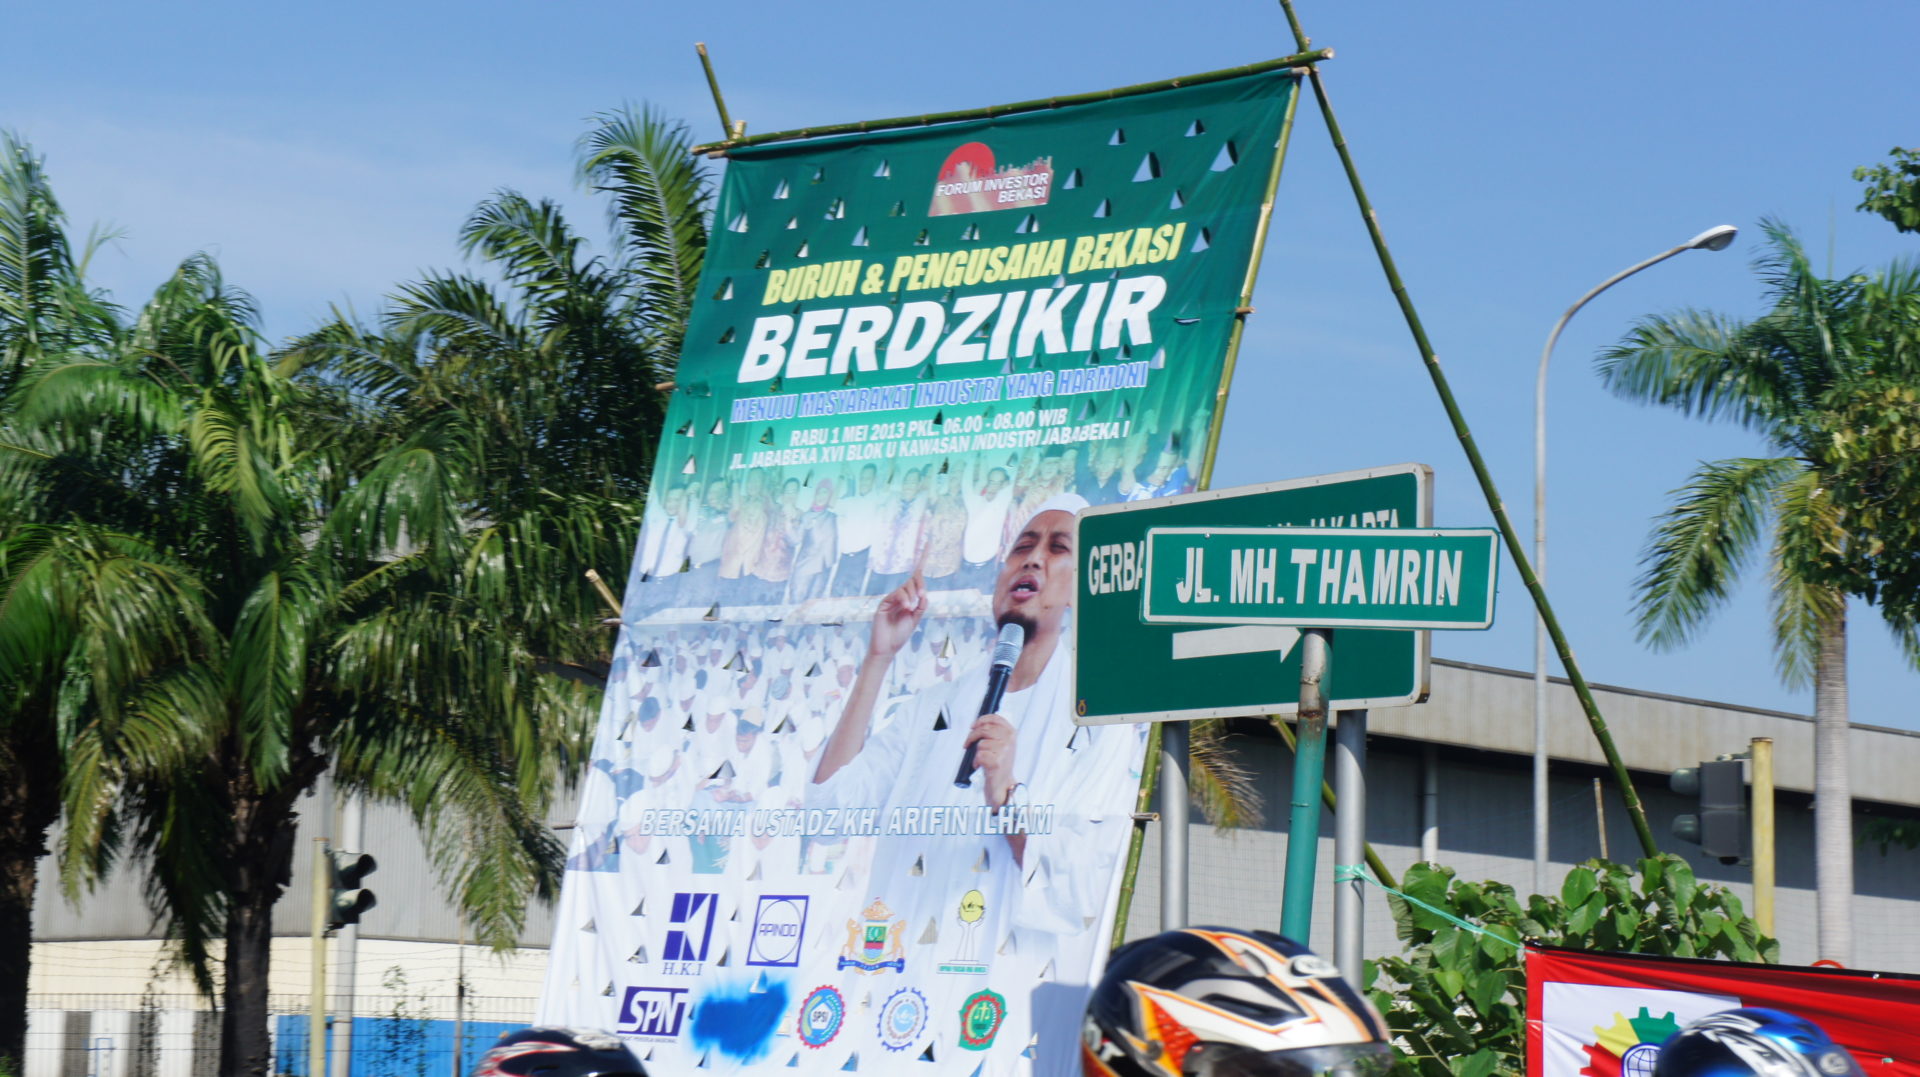 Ehrengast Arifin Ilham, Hauptfigur der Aksi Bela Islam bei der Zeremonie zum Internationalen Tag der Arbeit 2013 in Bekasi, West-Java. Er gilt als Ikone der Polygamie und lehnt sowohl Schia als auch LGBT ab © Sedane Labour Resource Centre, LIPS